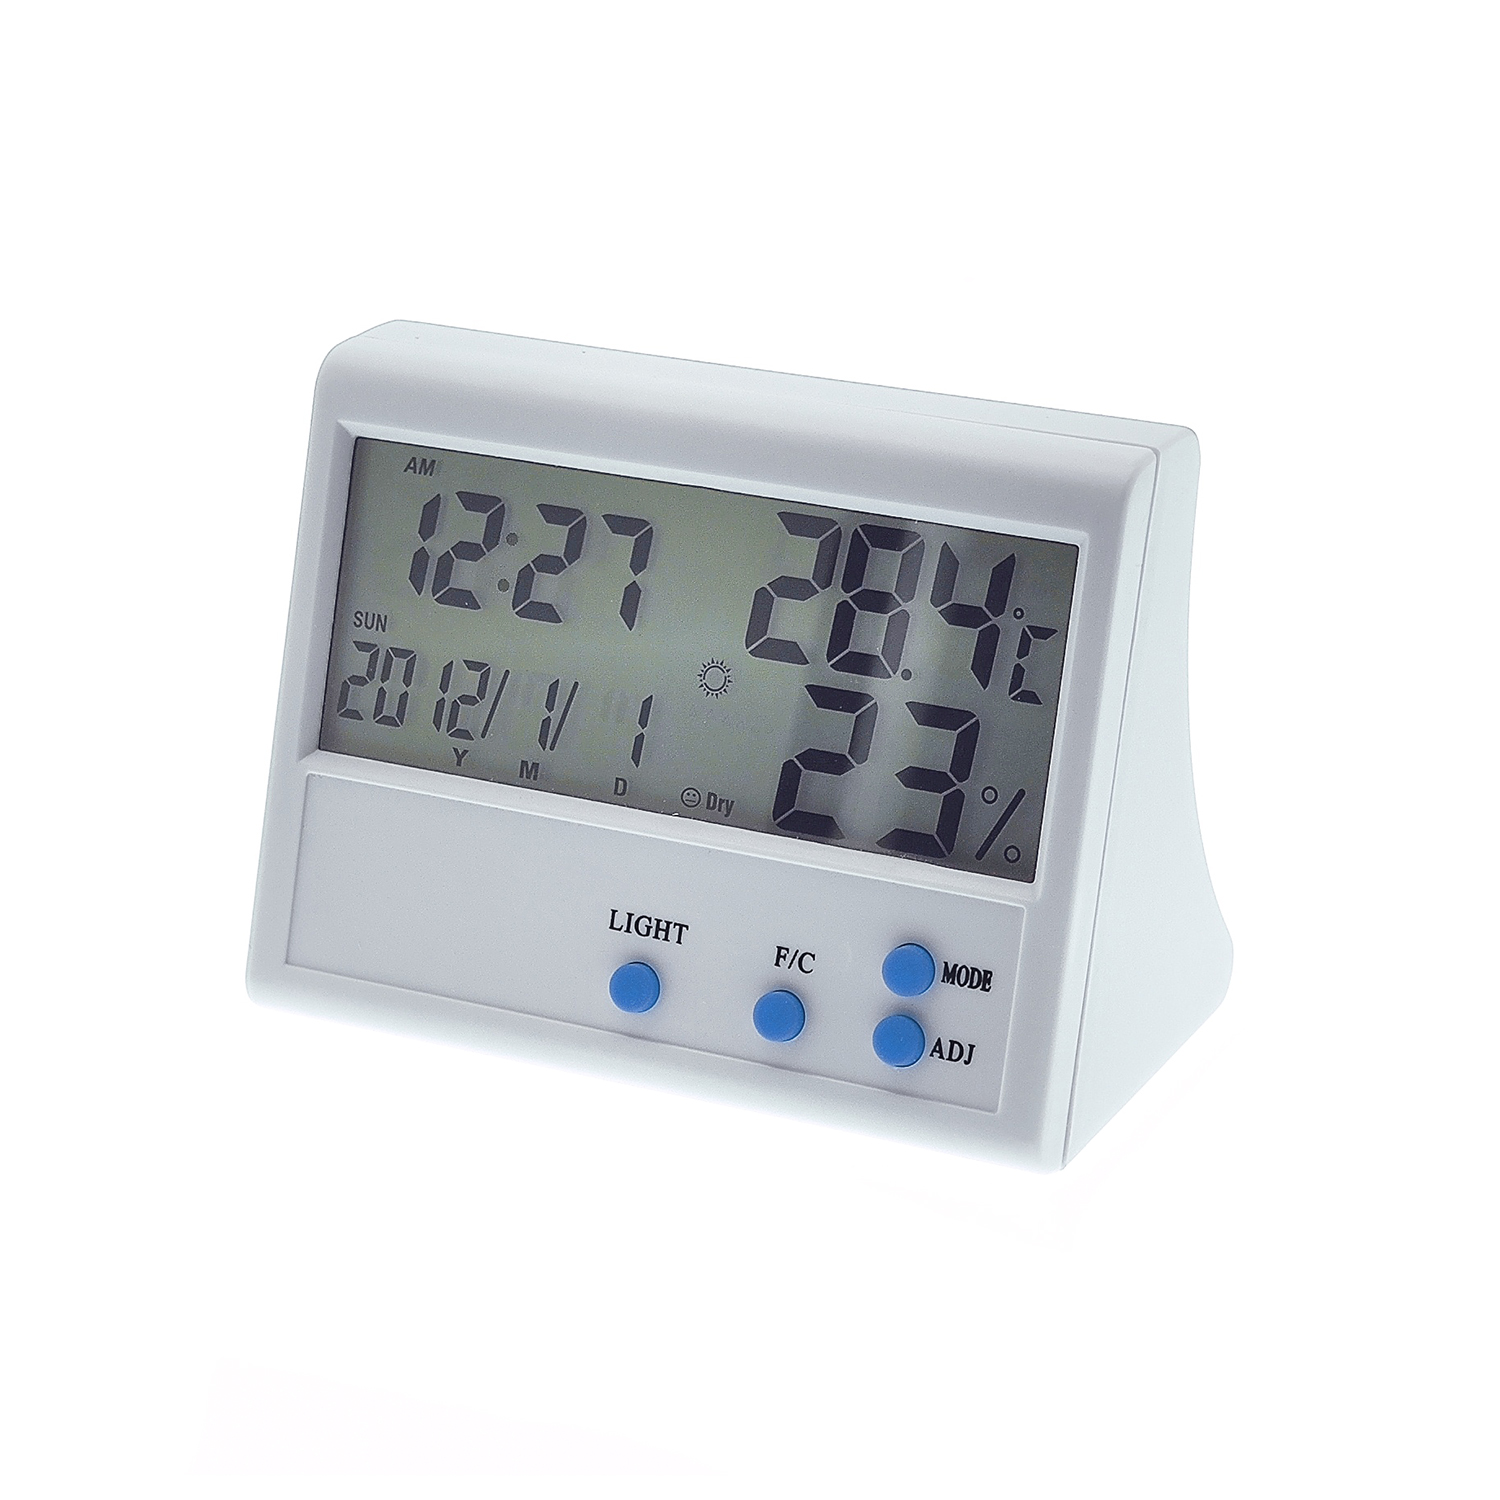 Метеостанция TH-902 термометр, гигрометр, часы, будильник, min/max(-0 +50С)